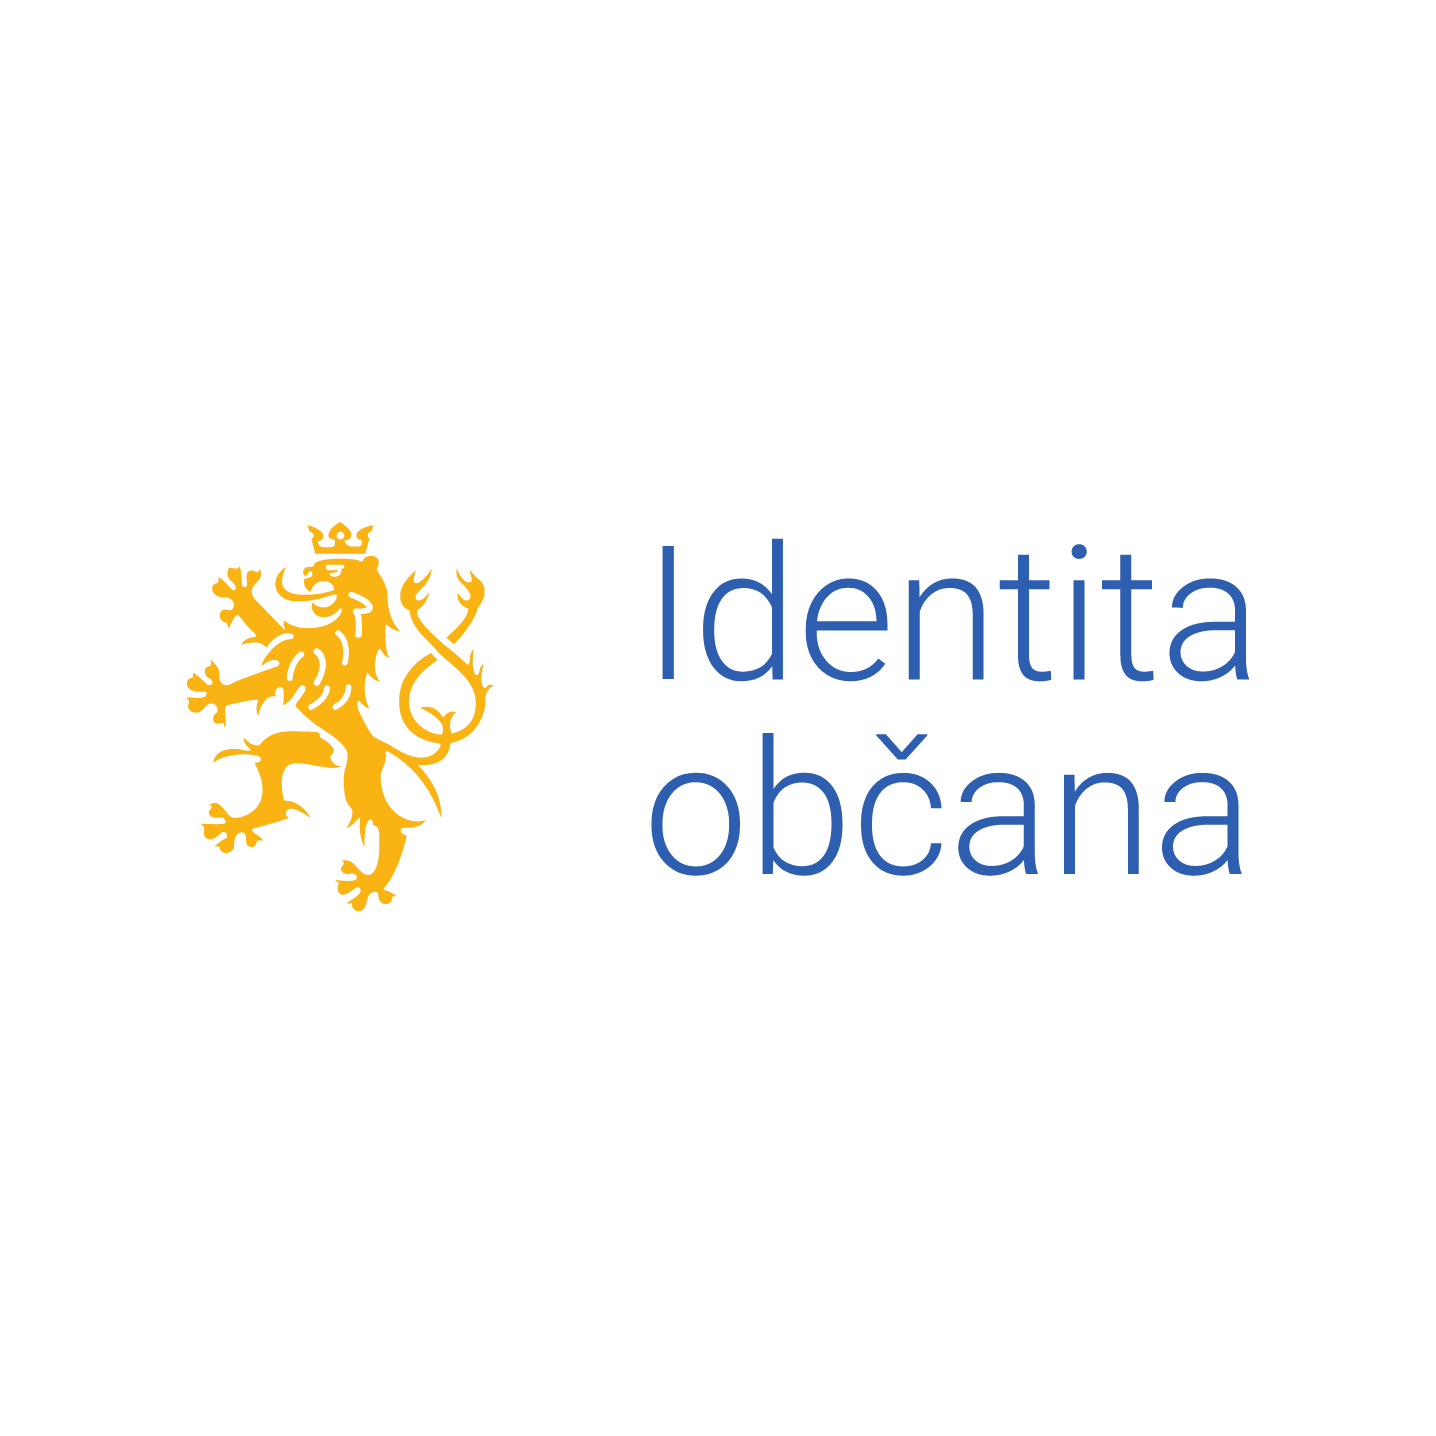 Logo Identity občana ve formátu RGB pozitiv čtverec